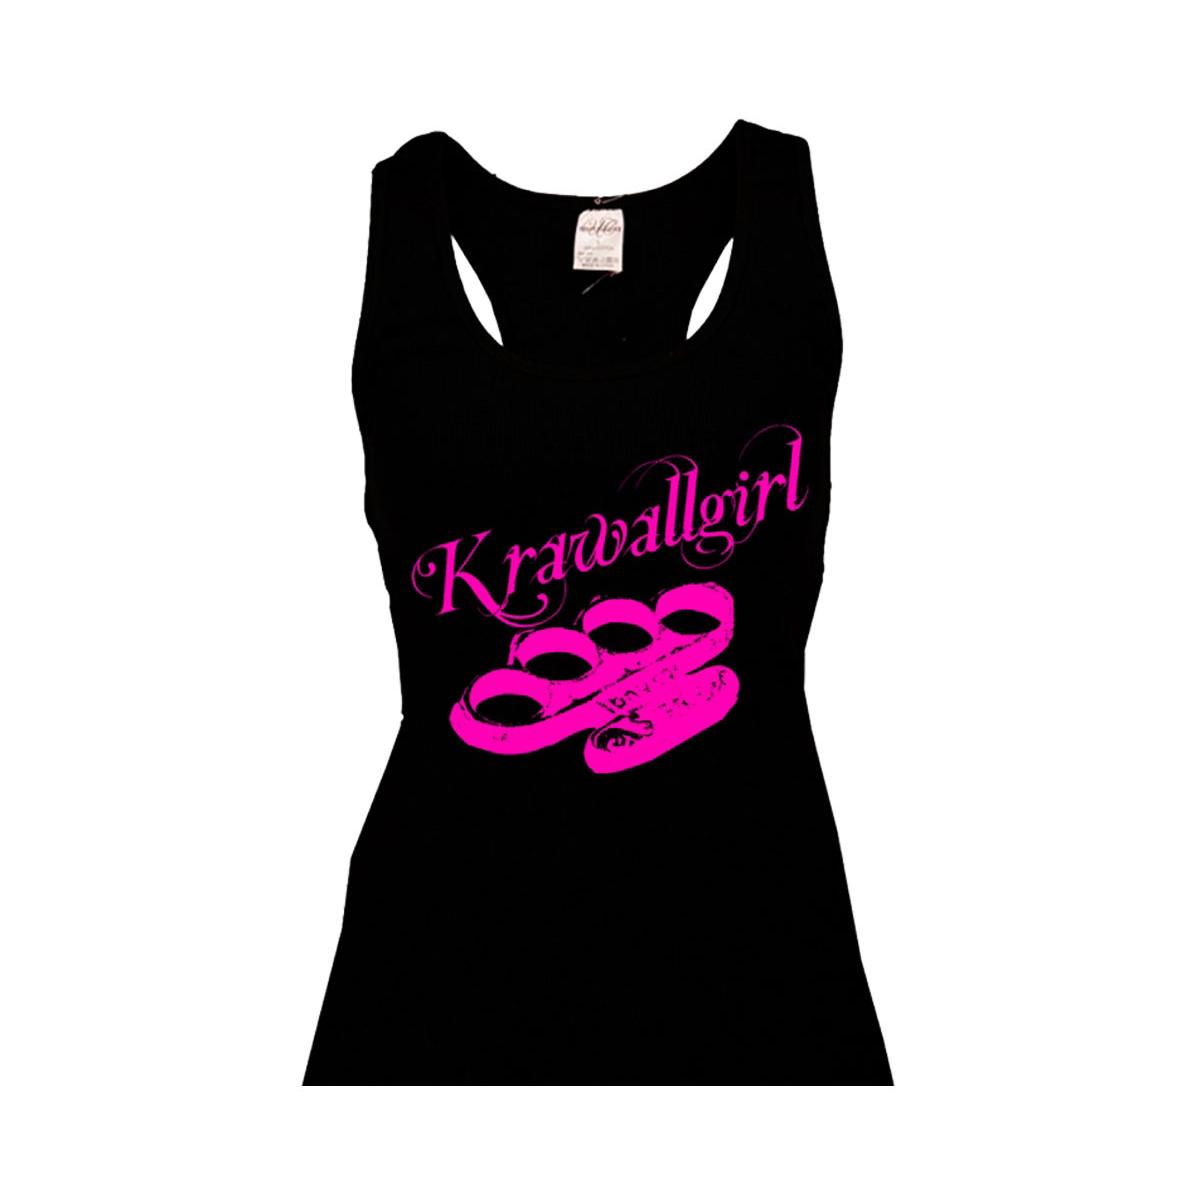 Krawallgirl - Schlagring - Frauen Top - schwarz-pink